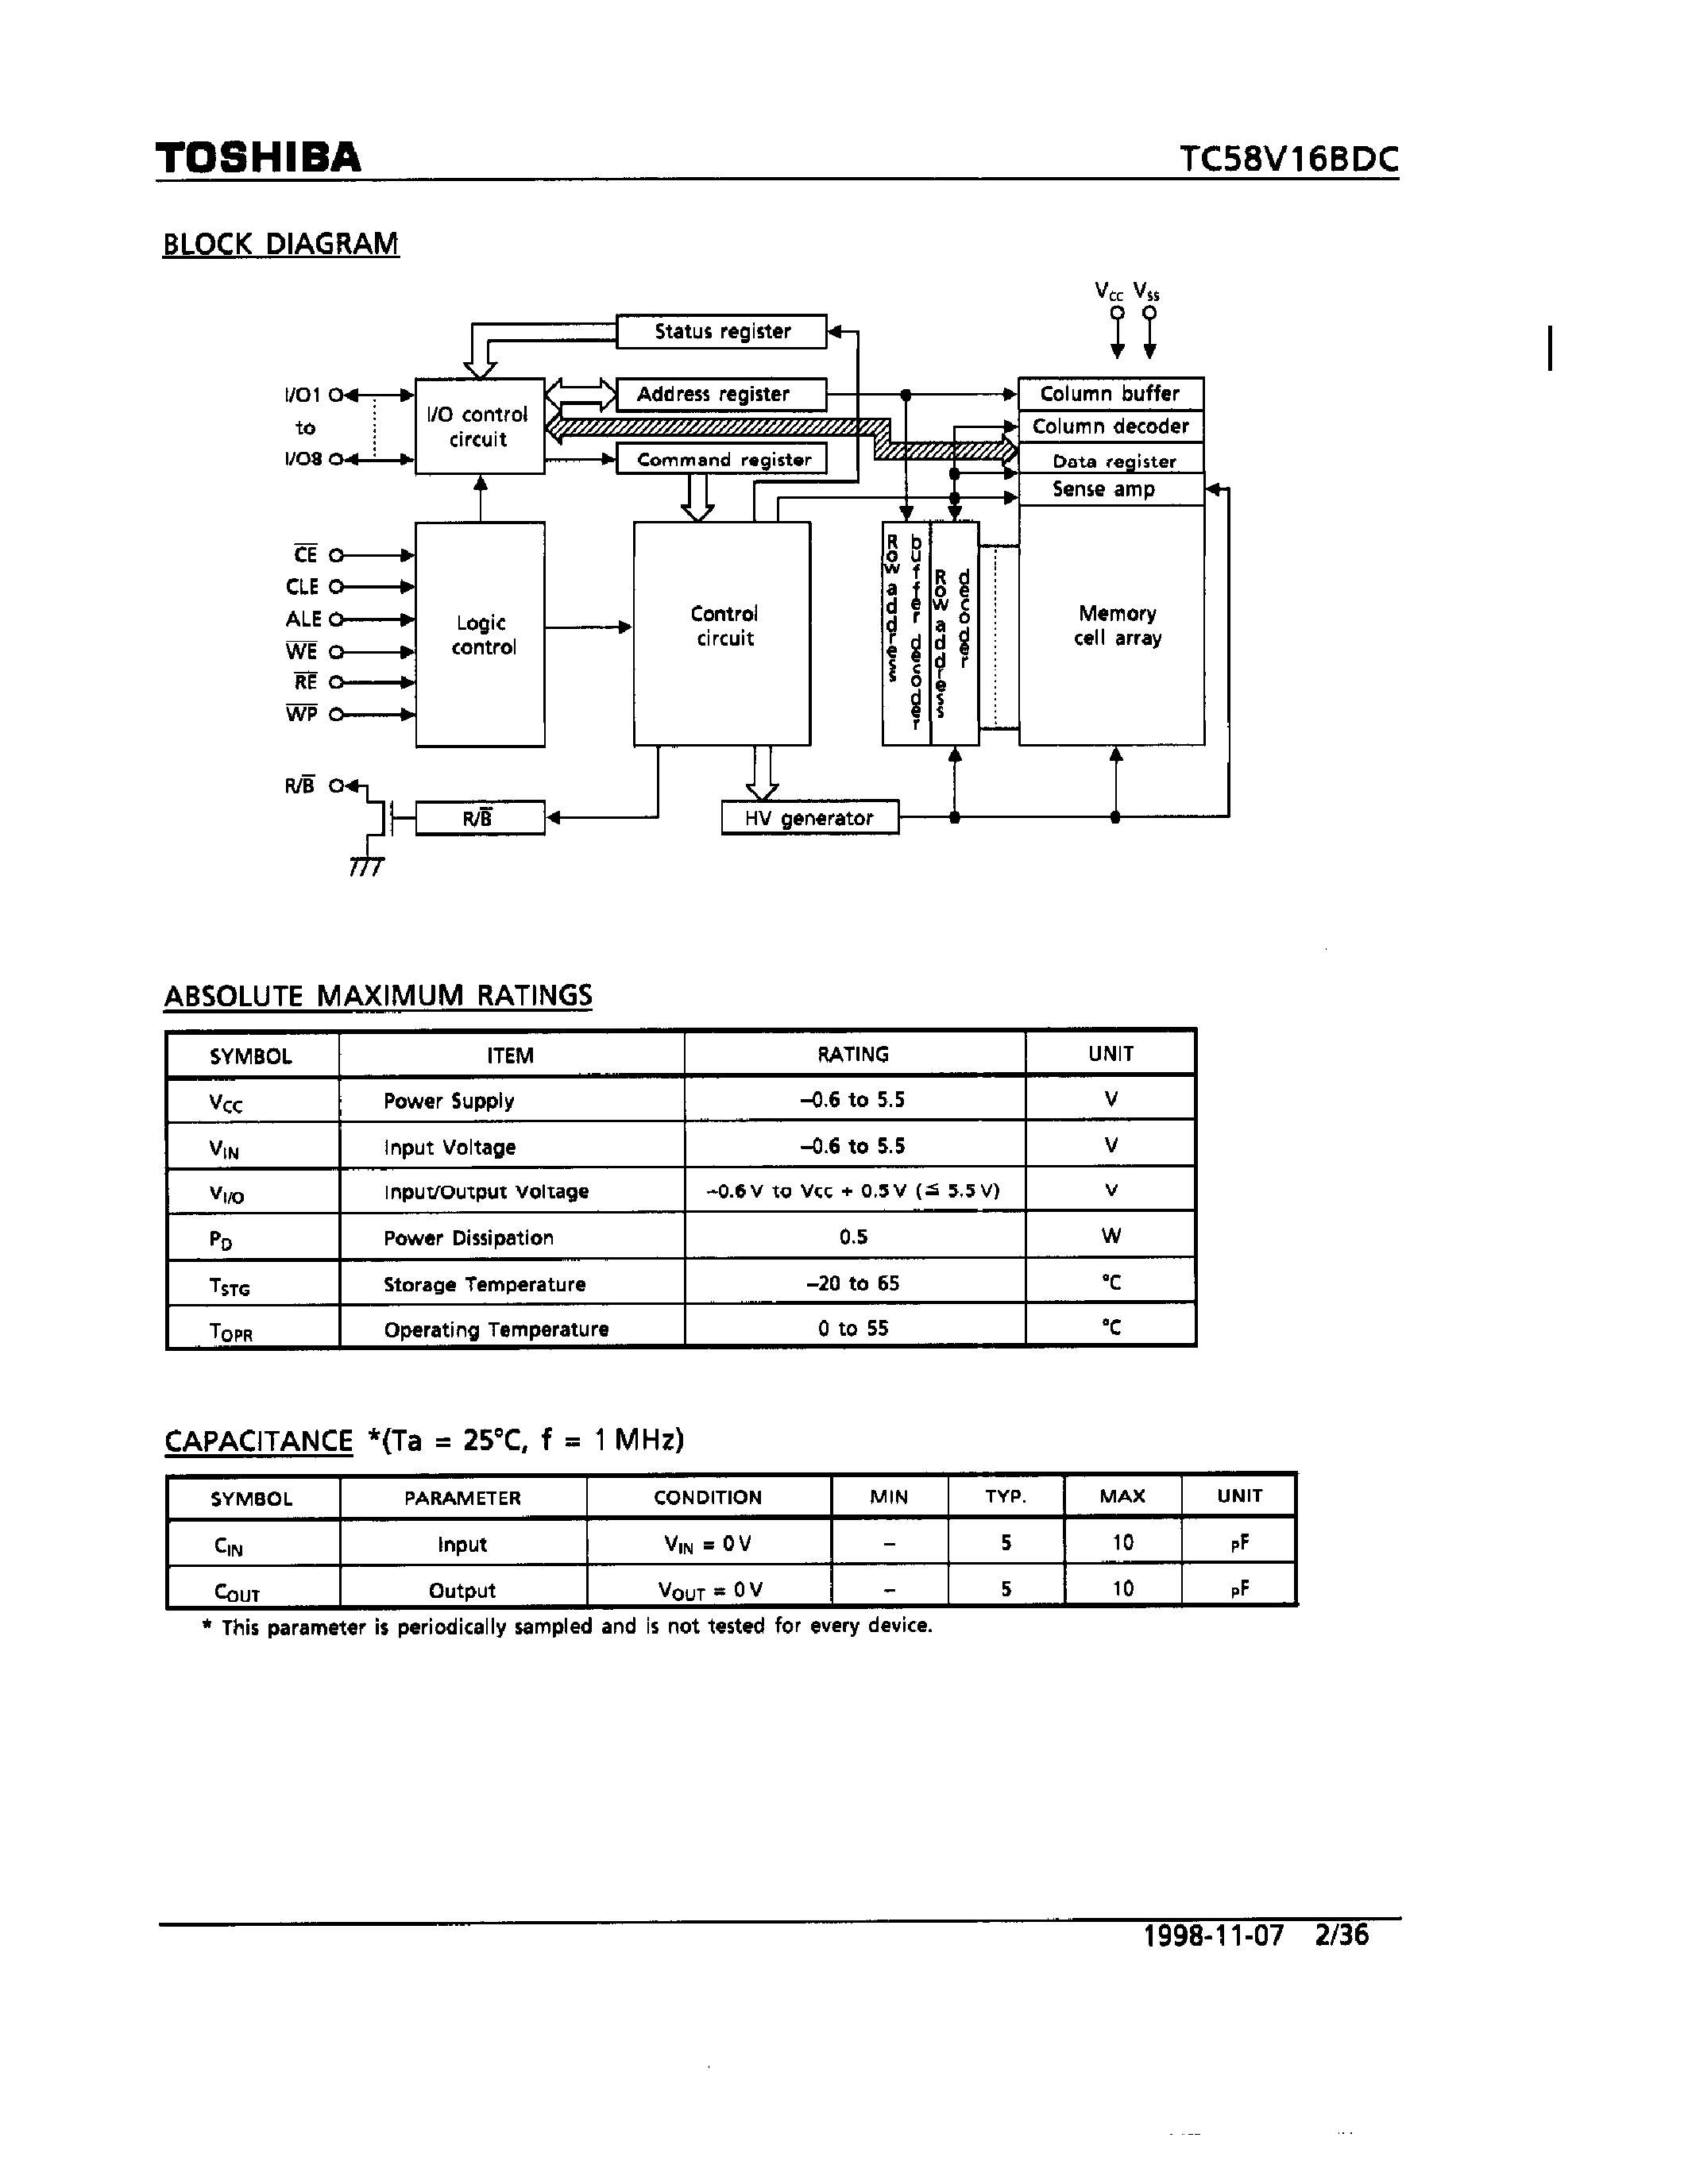 Даташит TC58V16BDC - 16M-Bit CMOS NAND EPROM страница 2